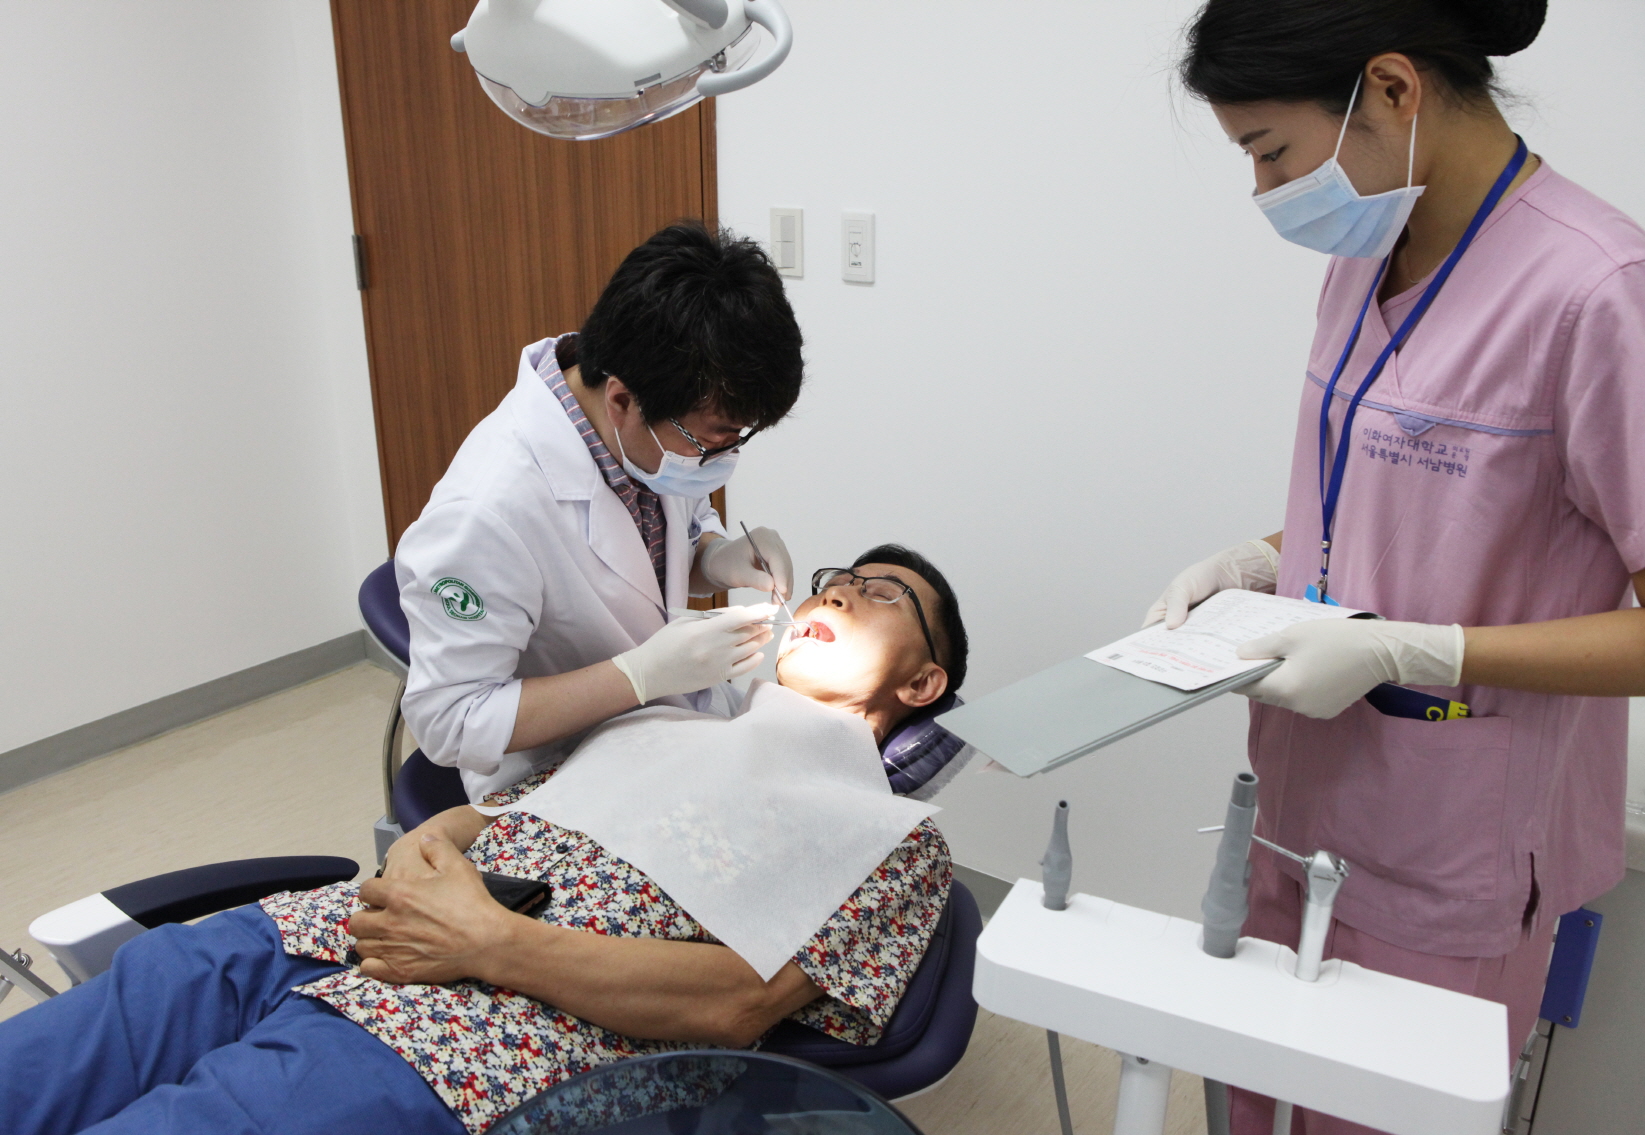 ▲서울특별시 서남병원에 신설된 치과 의료진의 치료모습. (서남병원)